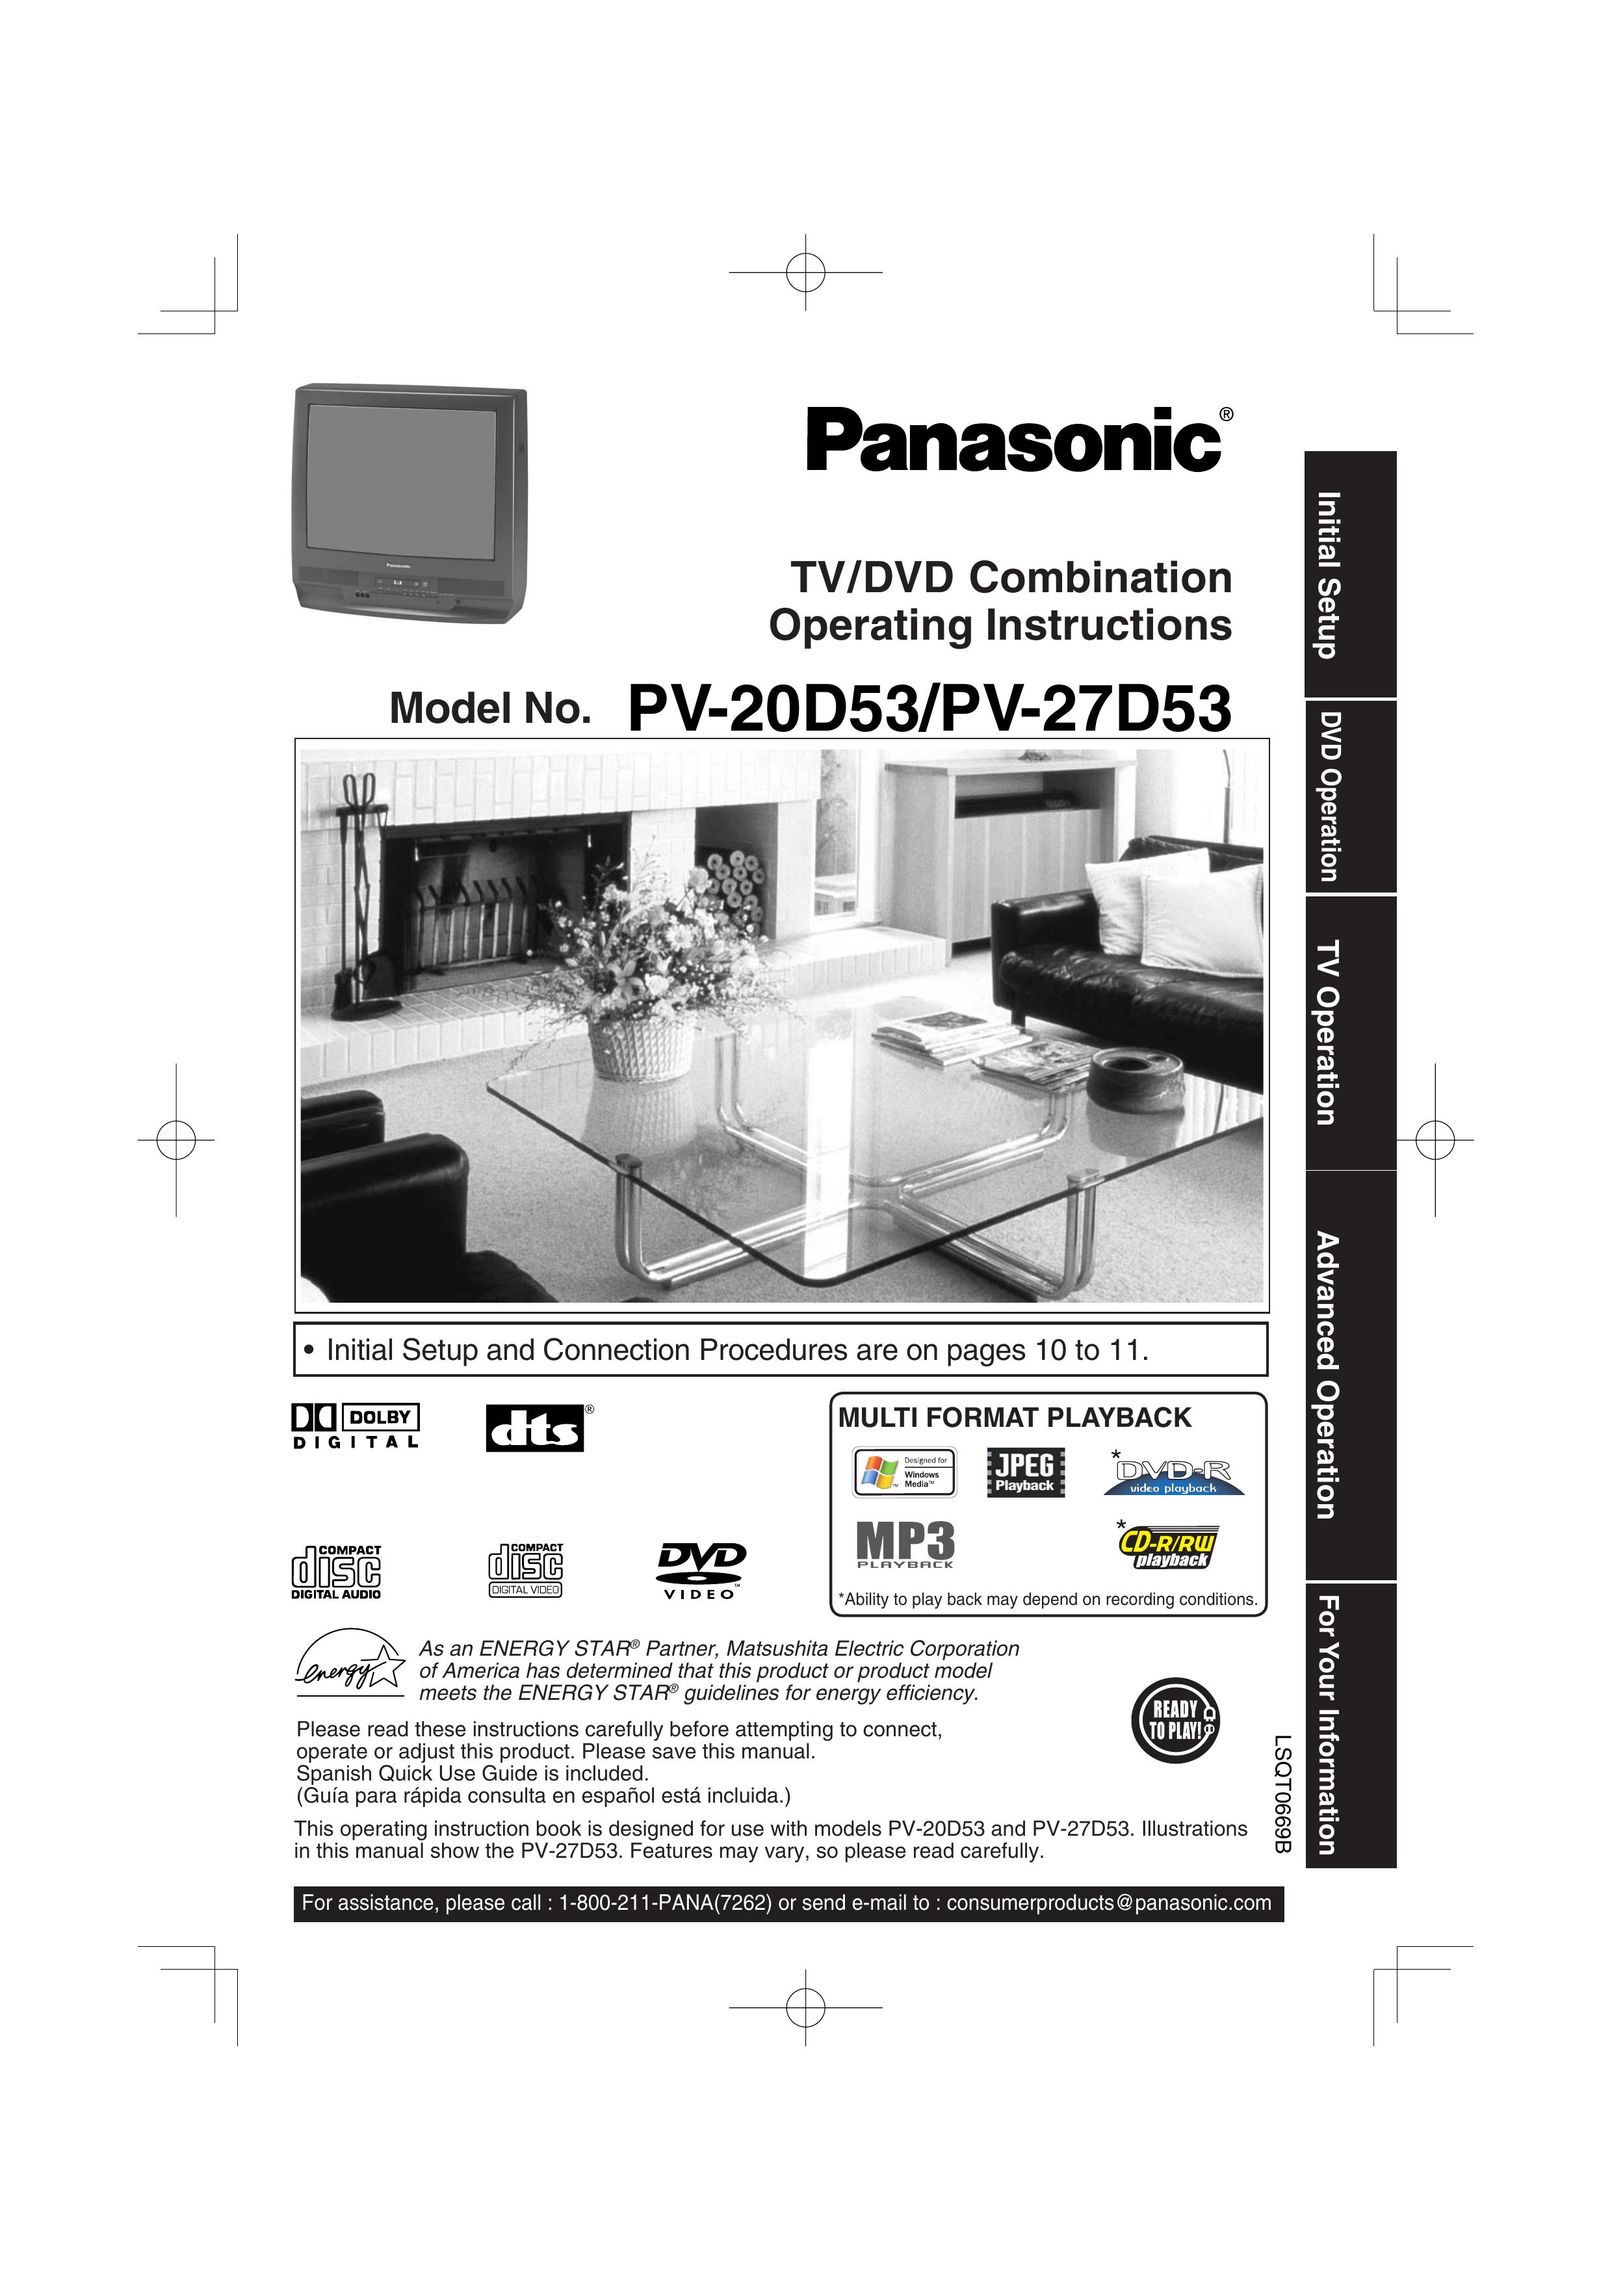 Panasonic PV 27D53 TV DVD Combo User Manual